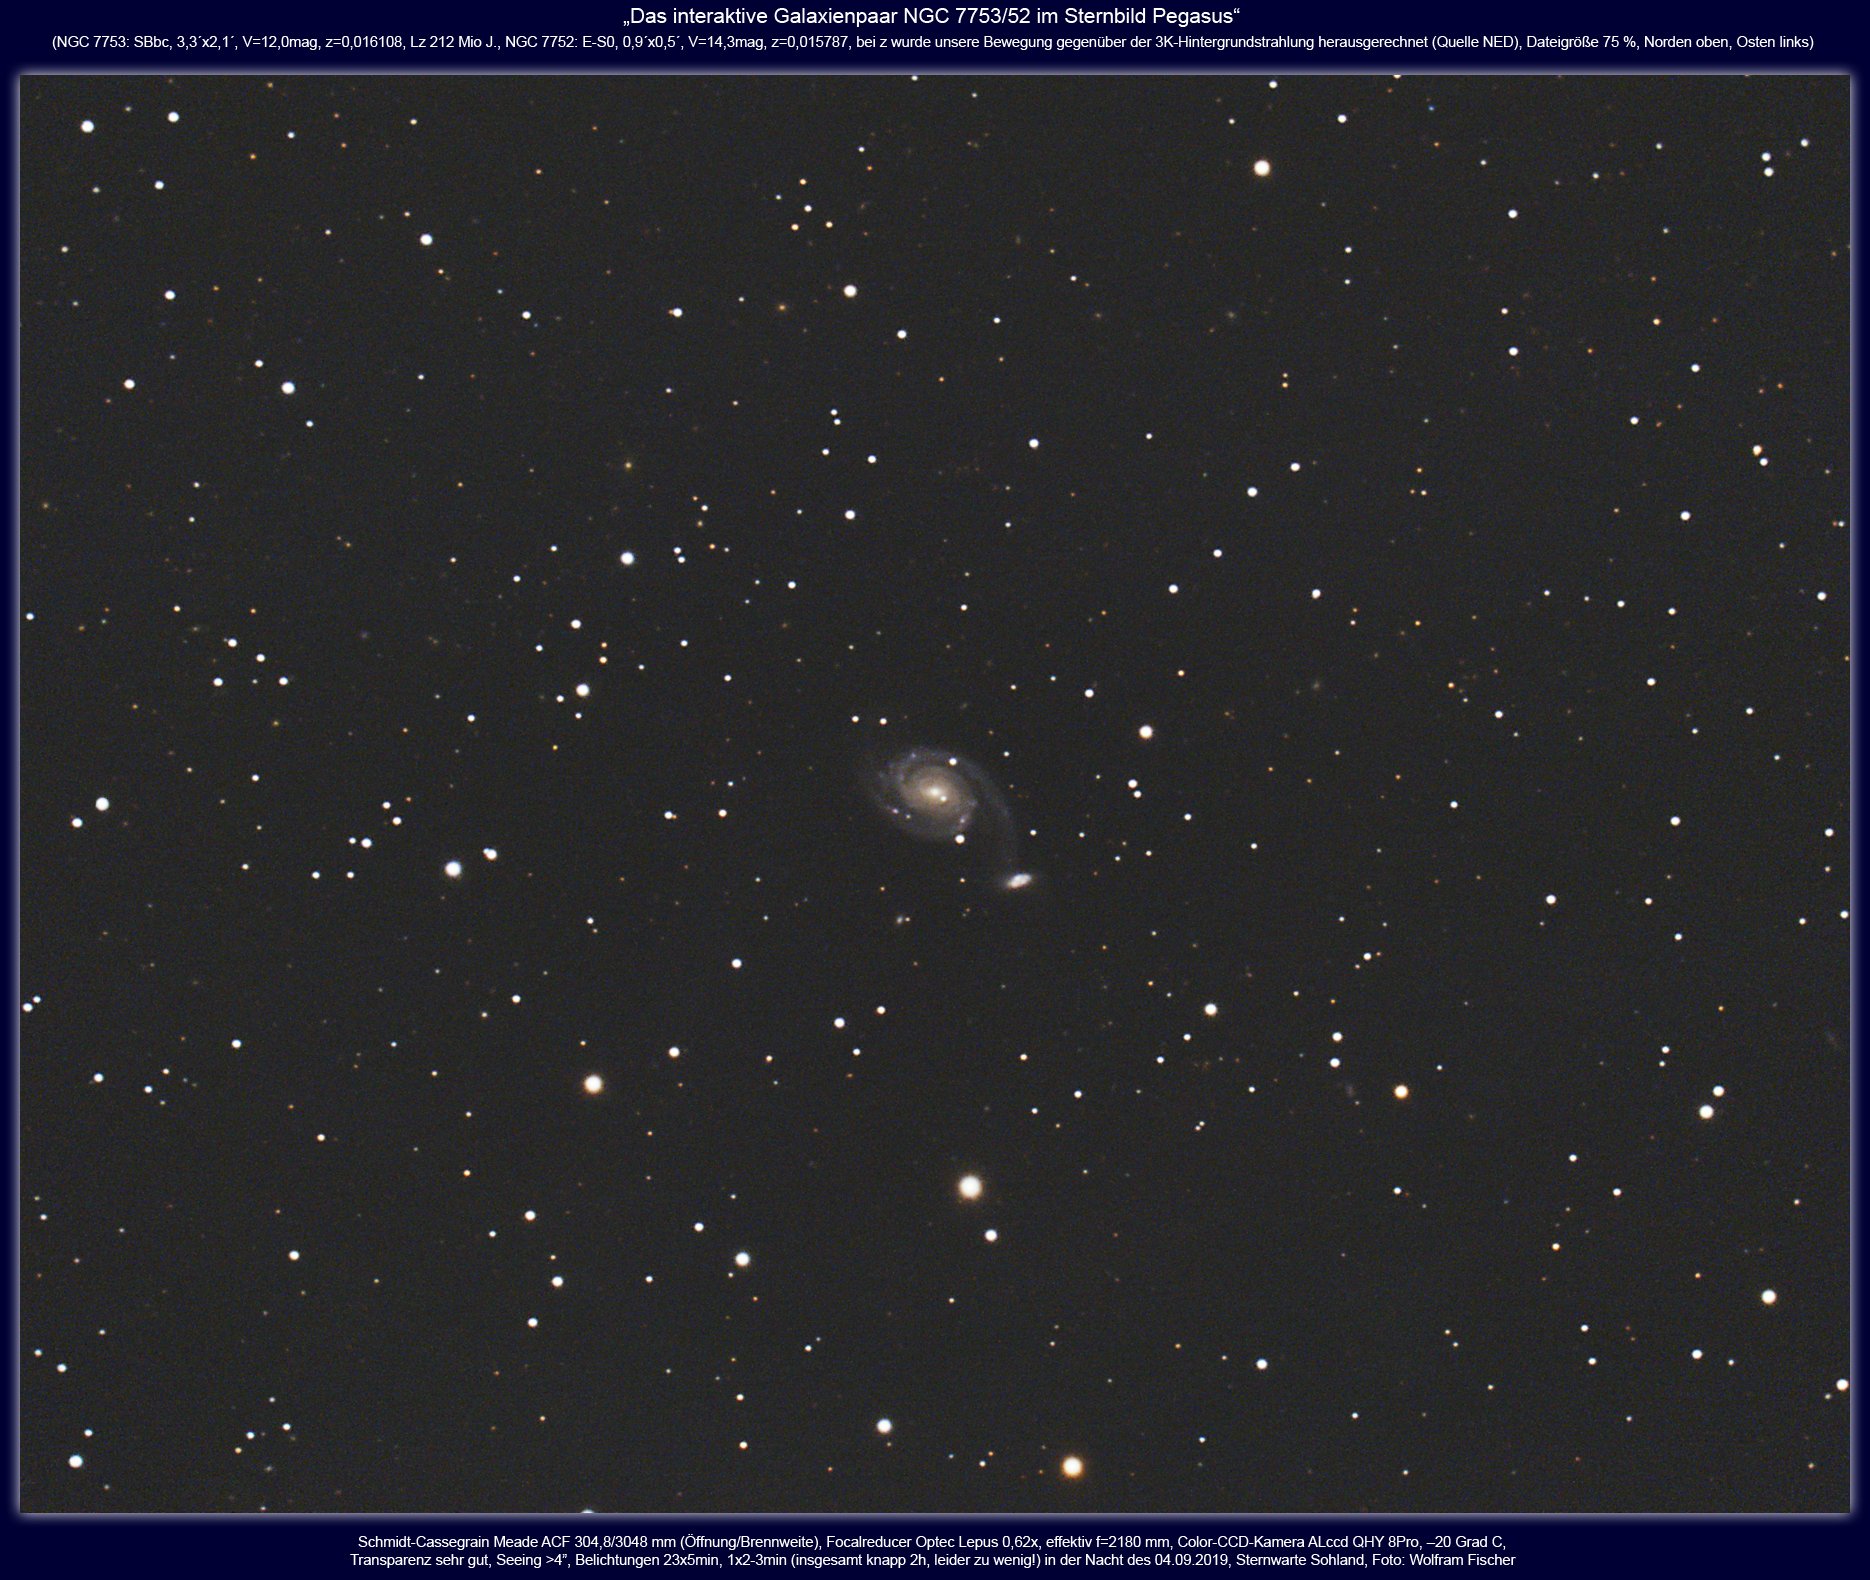 20190904.2.NGC7753,52